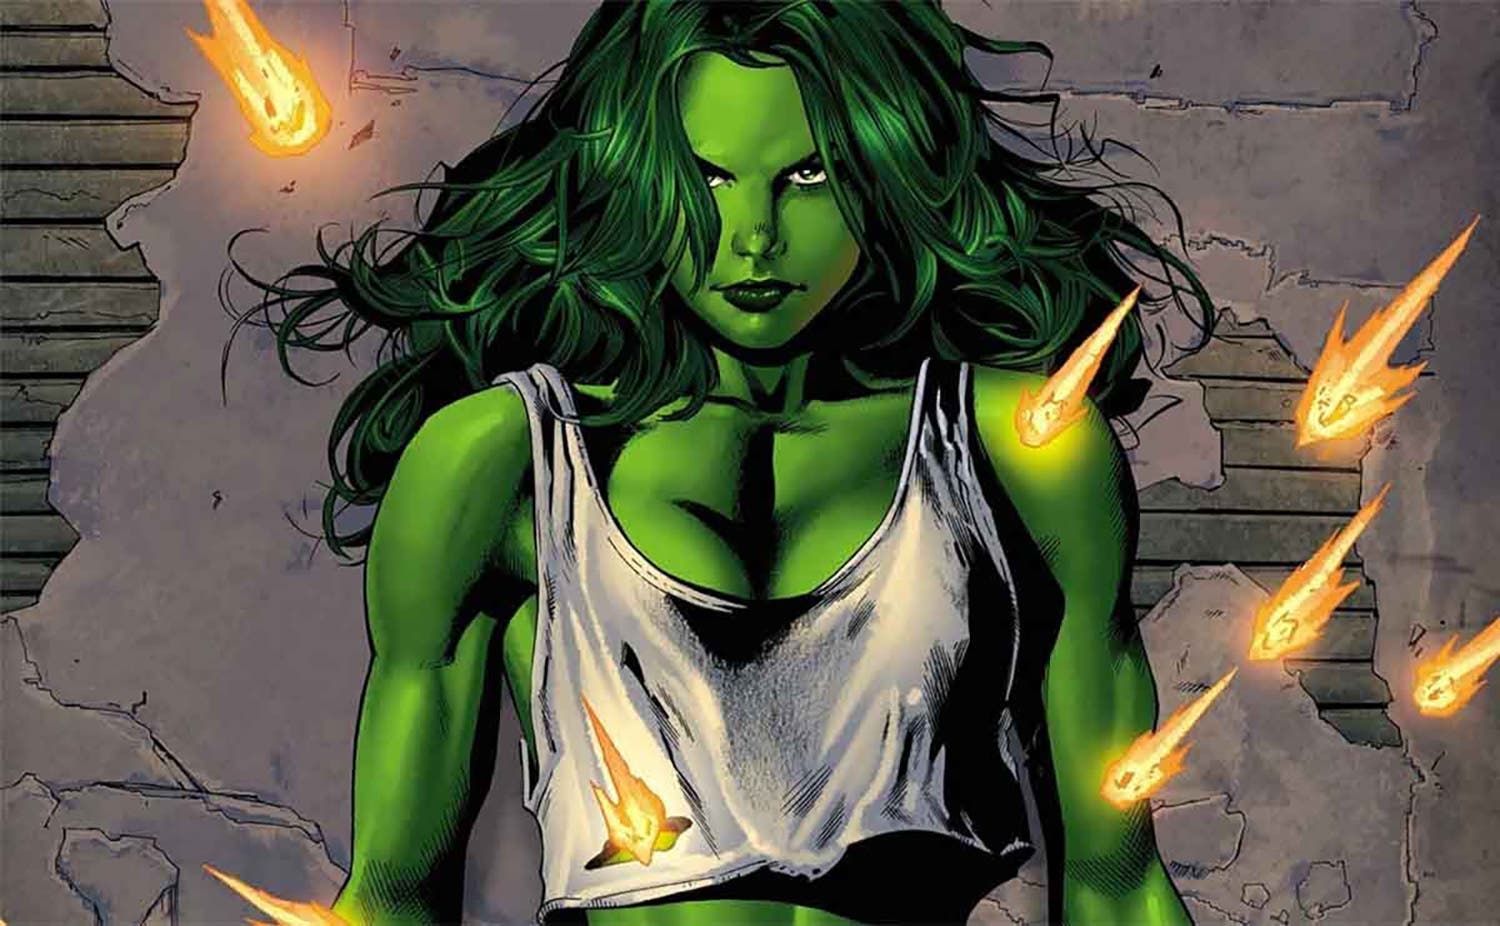 Conoce los detalles de la serie de Marvel "She Hulk" que transmitirá Disney  Plus - Diario La Página